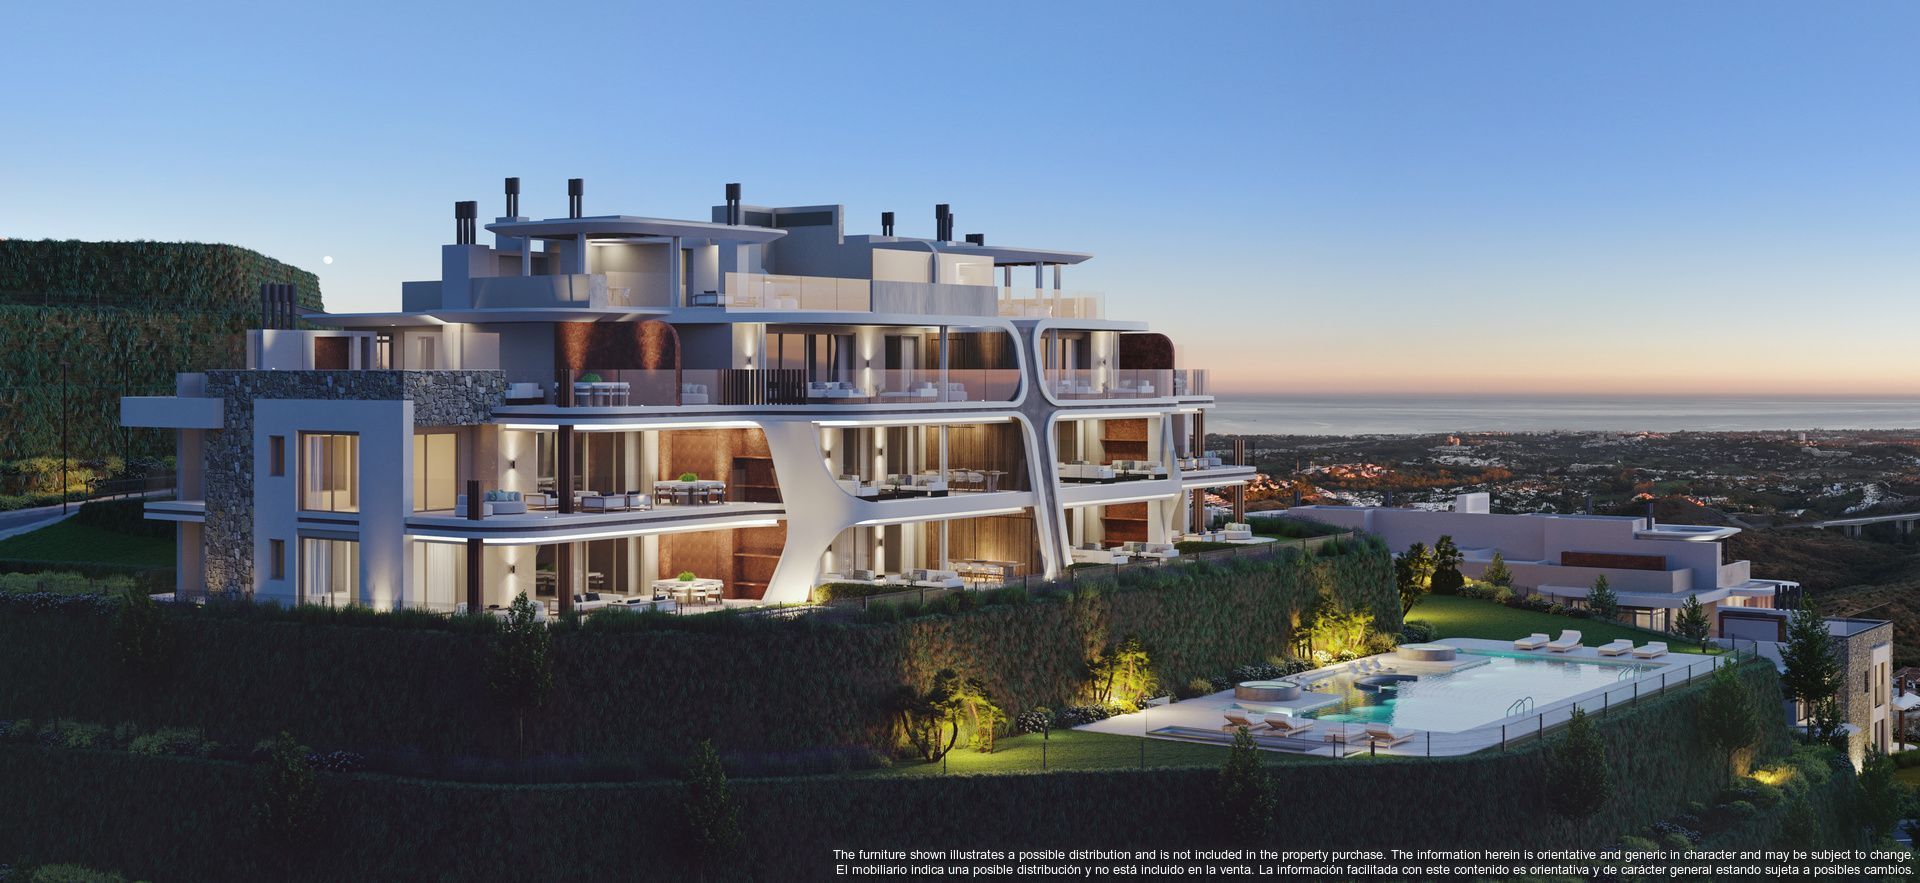 This latest development raises the bar for luxury living in Marbella, Benahavis foto-2